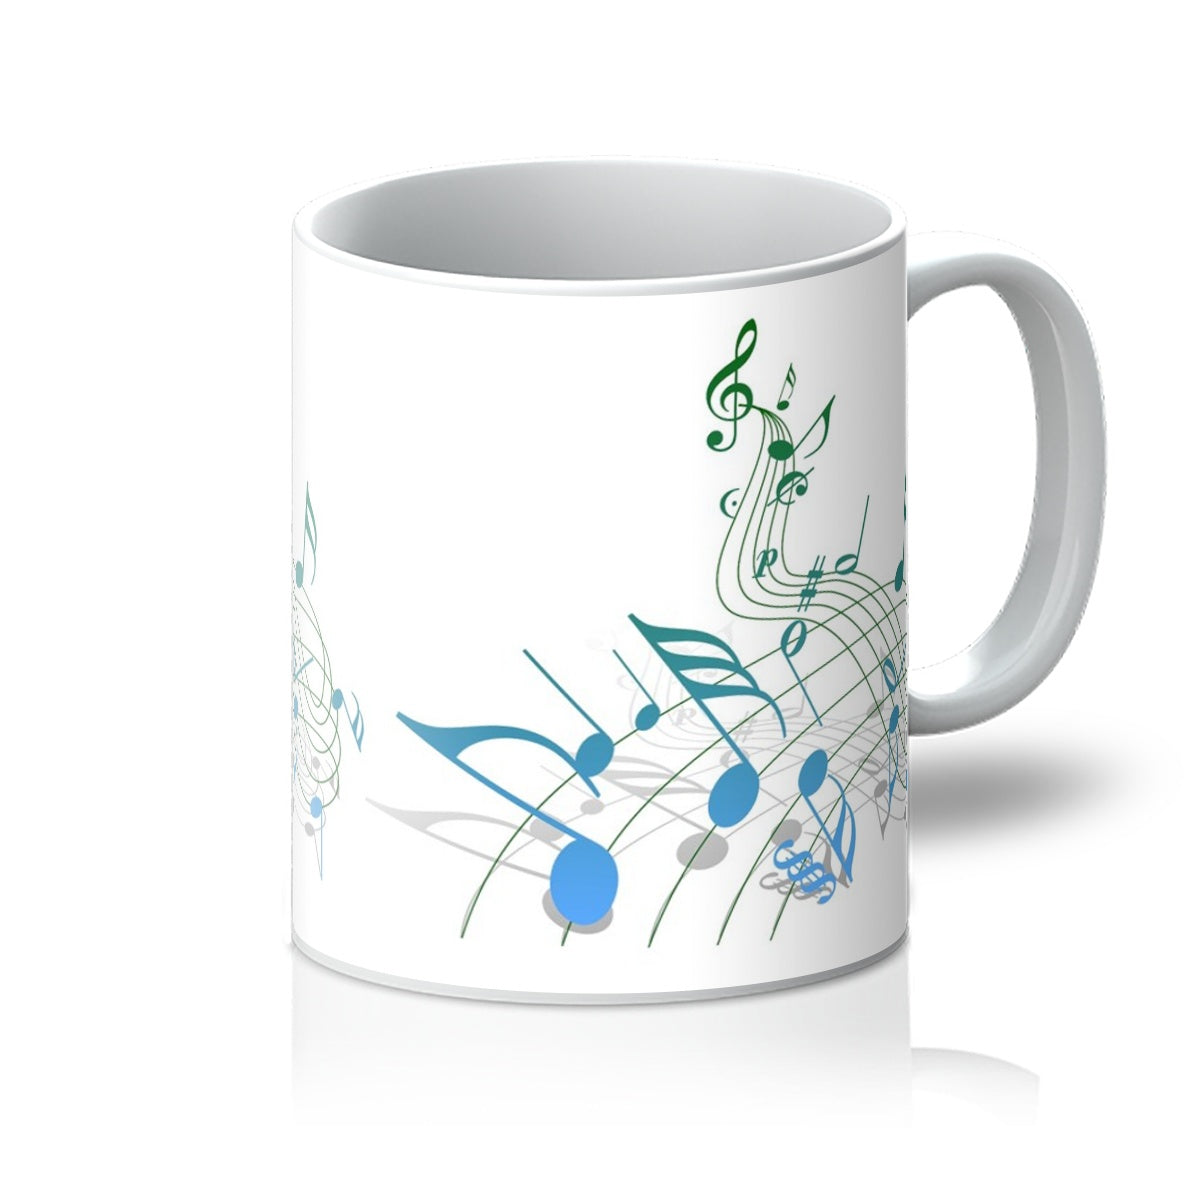 Abstract Music Score Mug